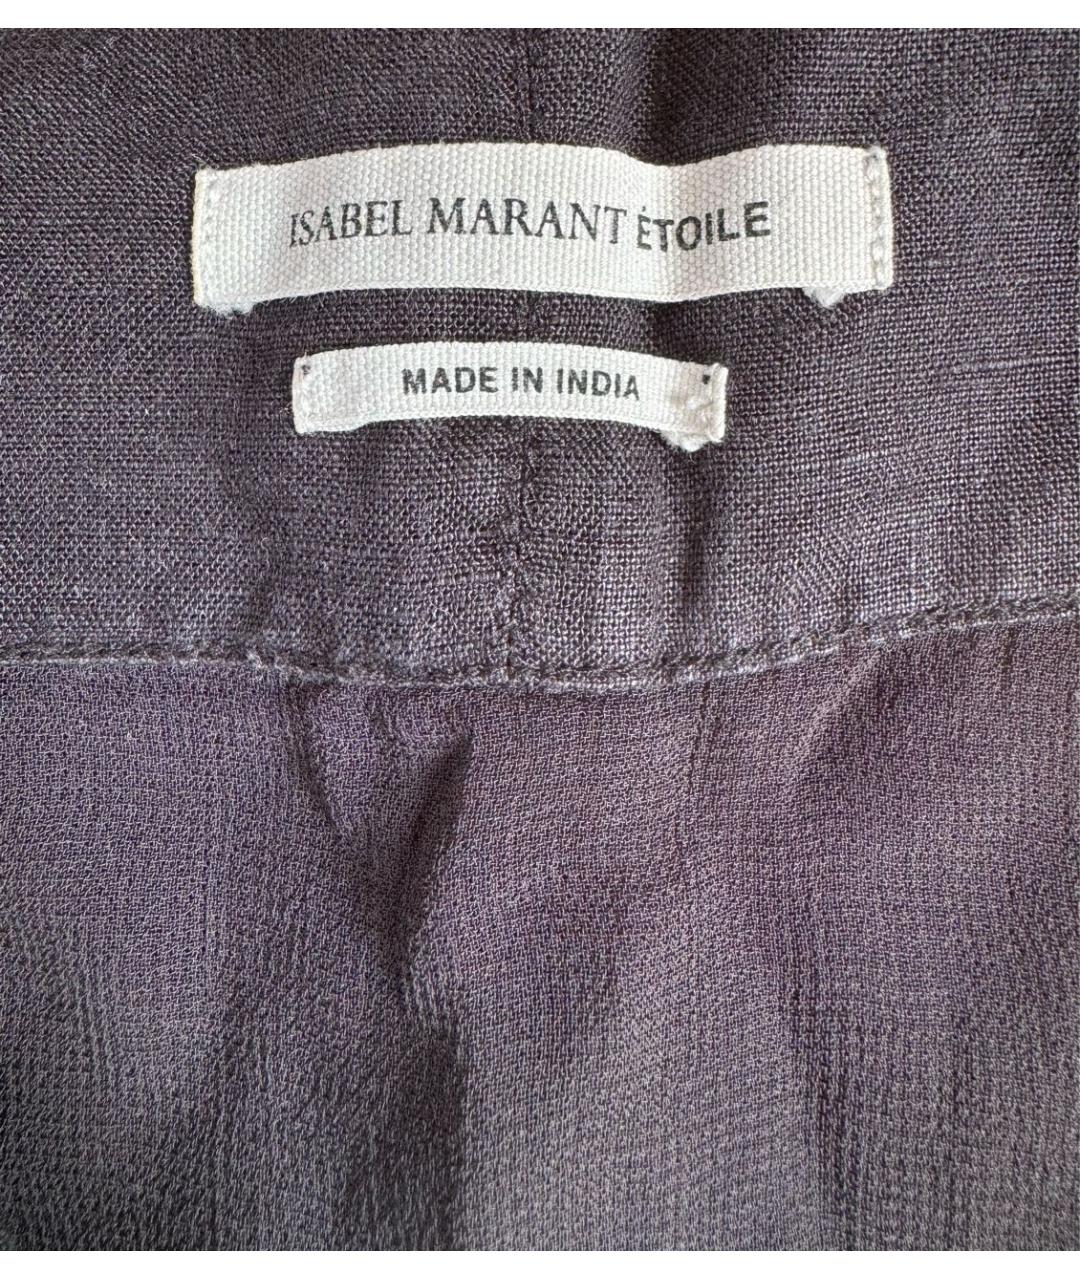 ISABEL MARANT ETOILE Черная льняная юбка мини, фото 2